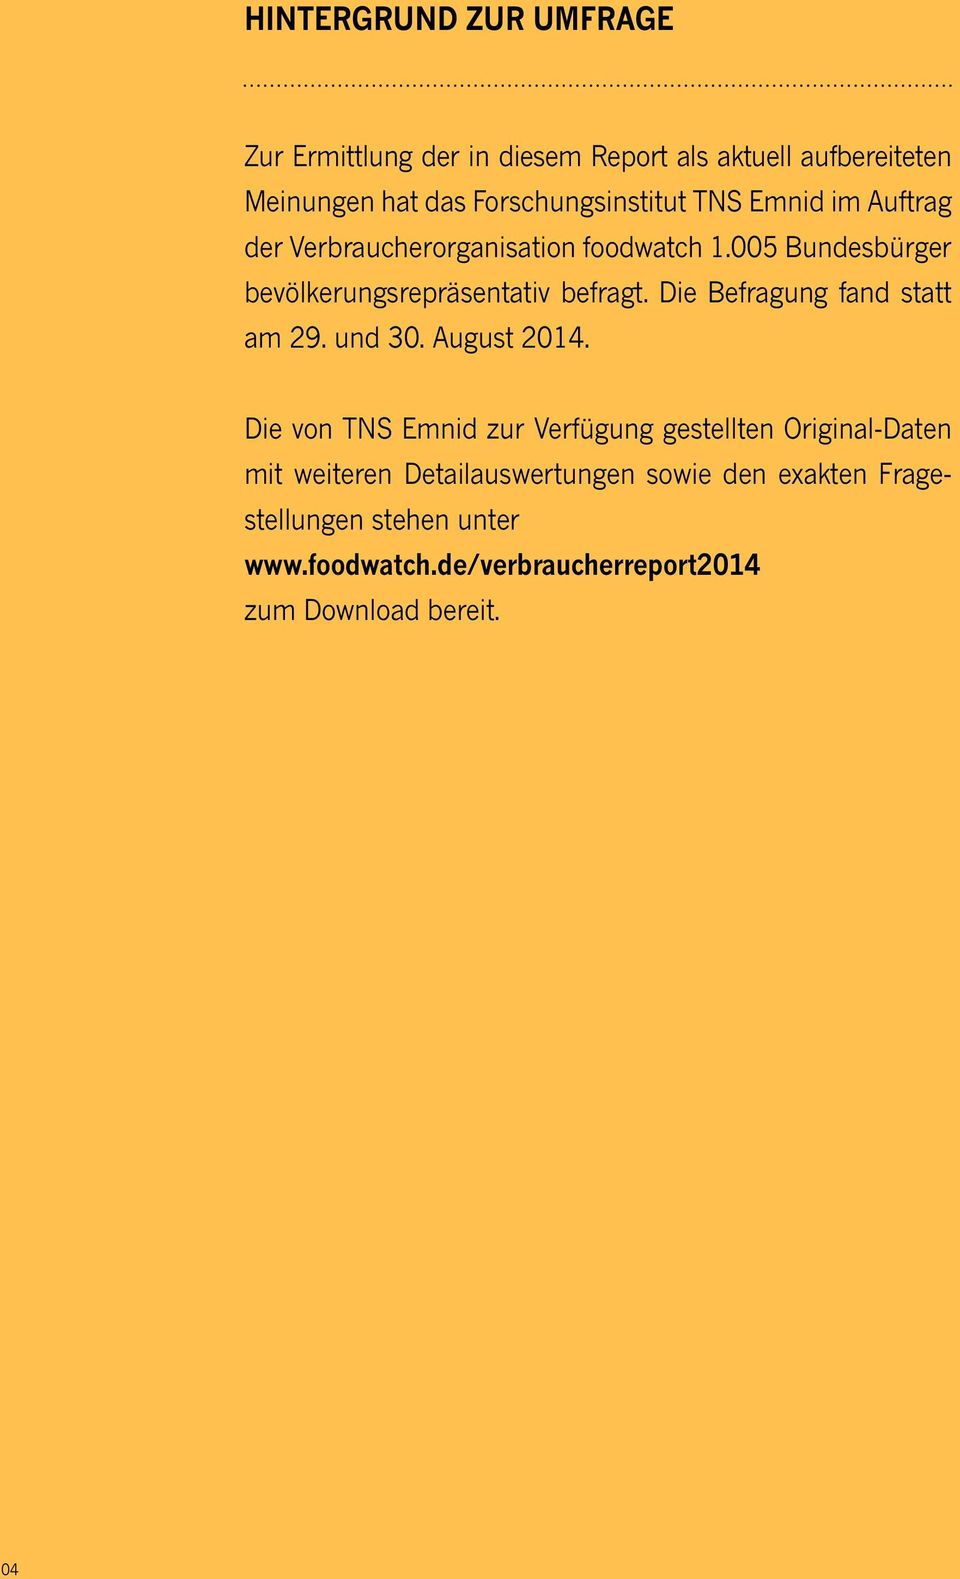 005 Bundesbürger bevölkerungsrepräsentativ befragt. Die Befragung fand statt am 29. und 30. August 2014.